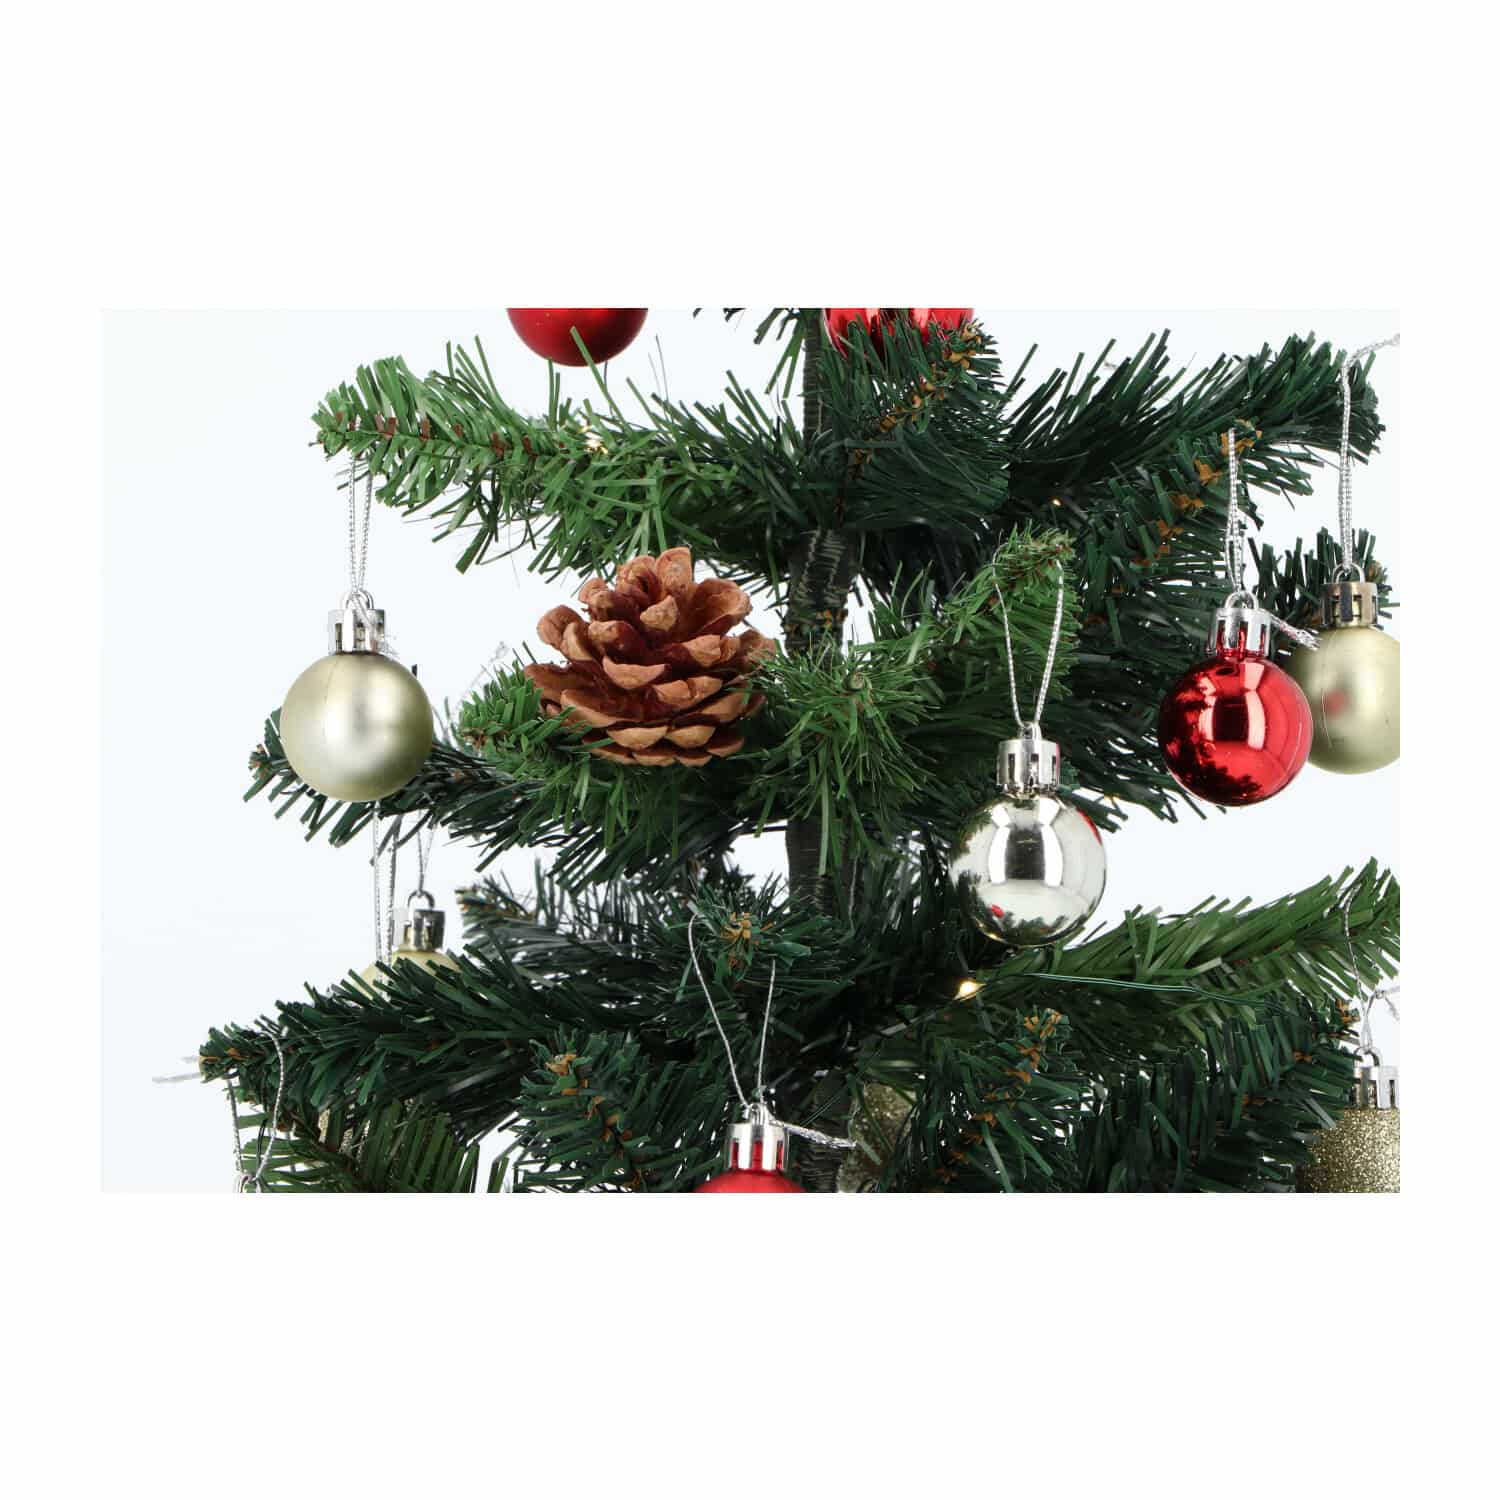 4goodz Kunstkerstboom LED Verlichting en versiering 50cm - Rood/Zilver